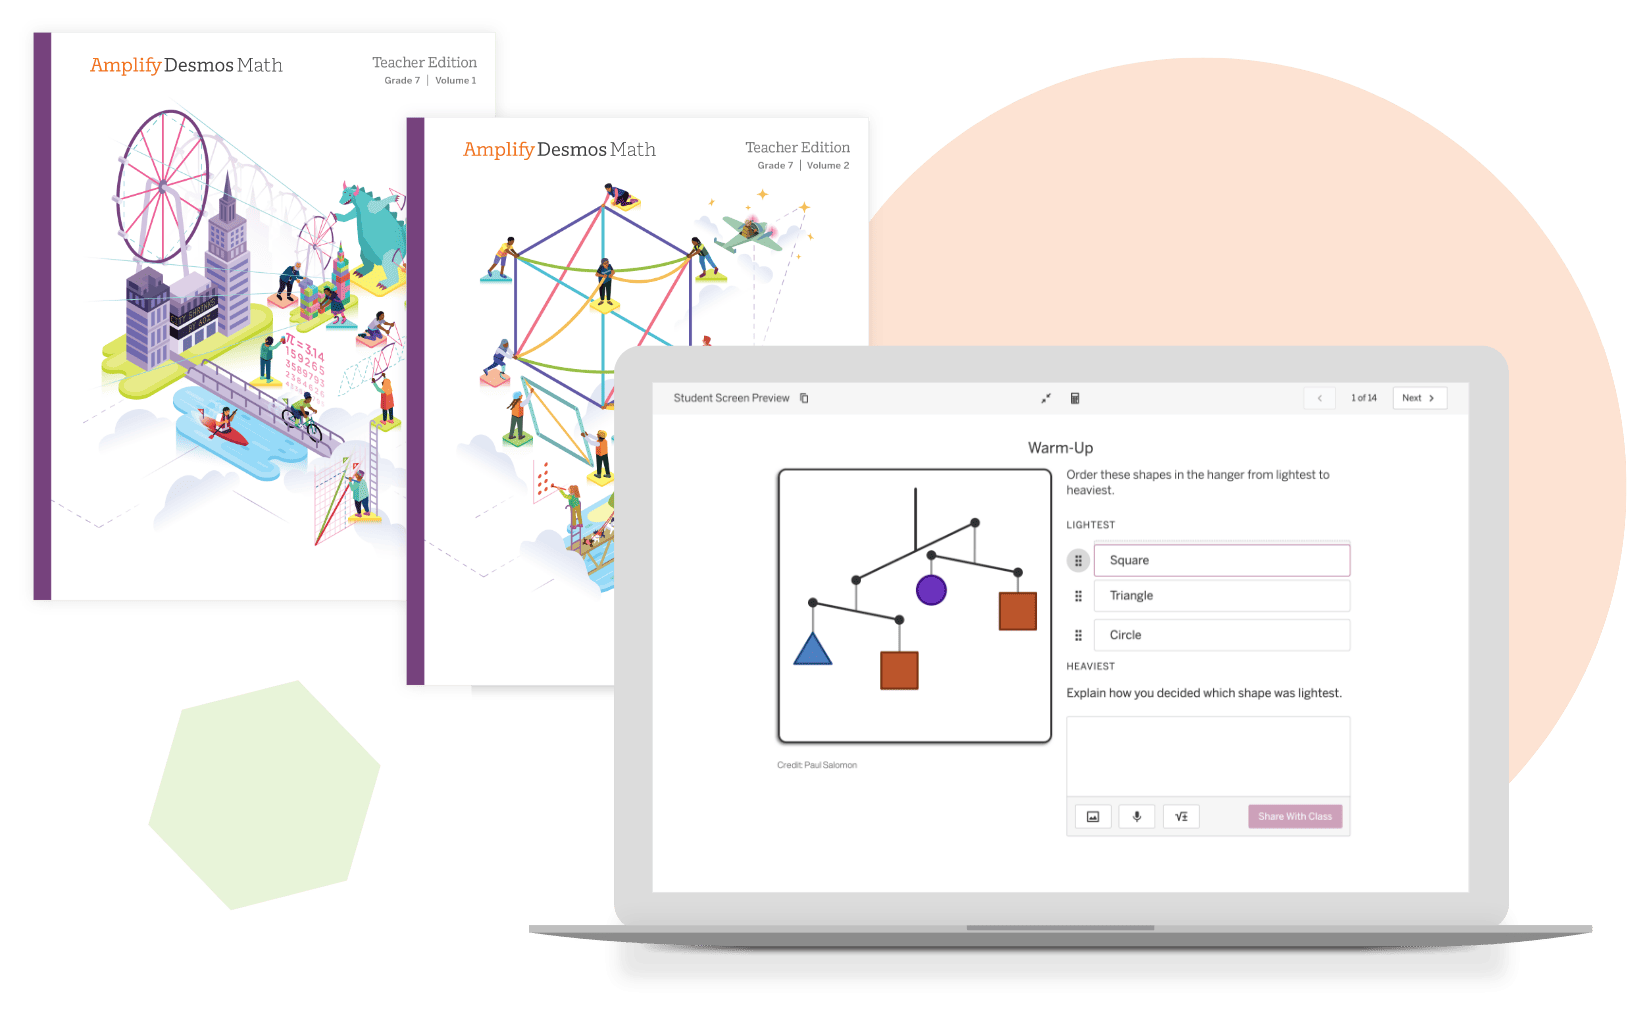 Ilustración de un entorno educativo con una computadora portátil que muestra una lección de Desmos Math en pantalla, flanqueada por representaciones coloridas y abstractas de un paisaje urbano y varios gráficos.